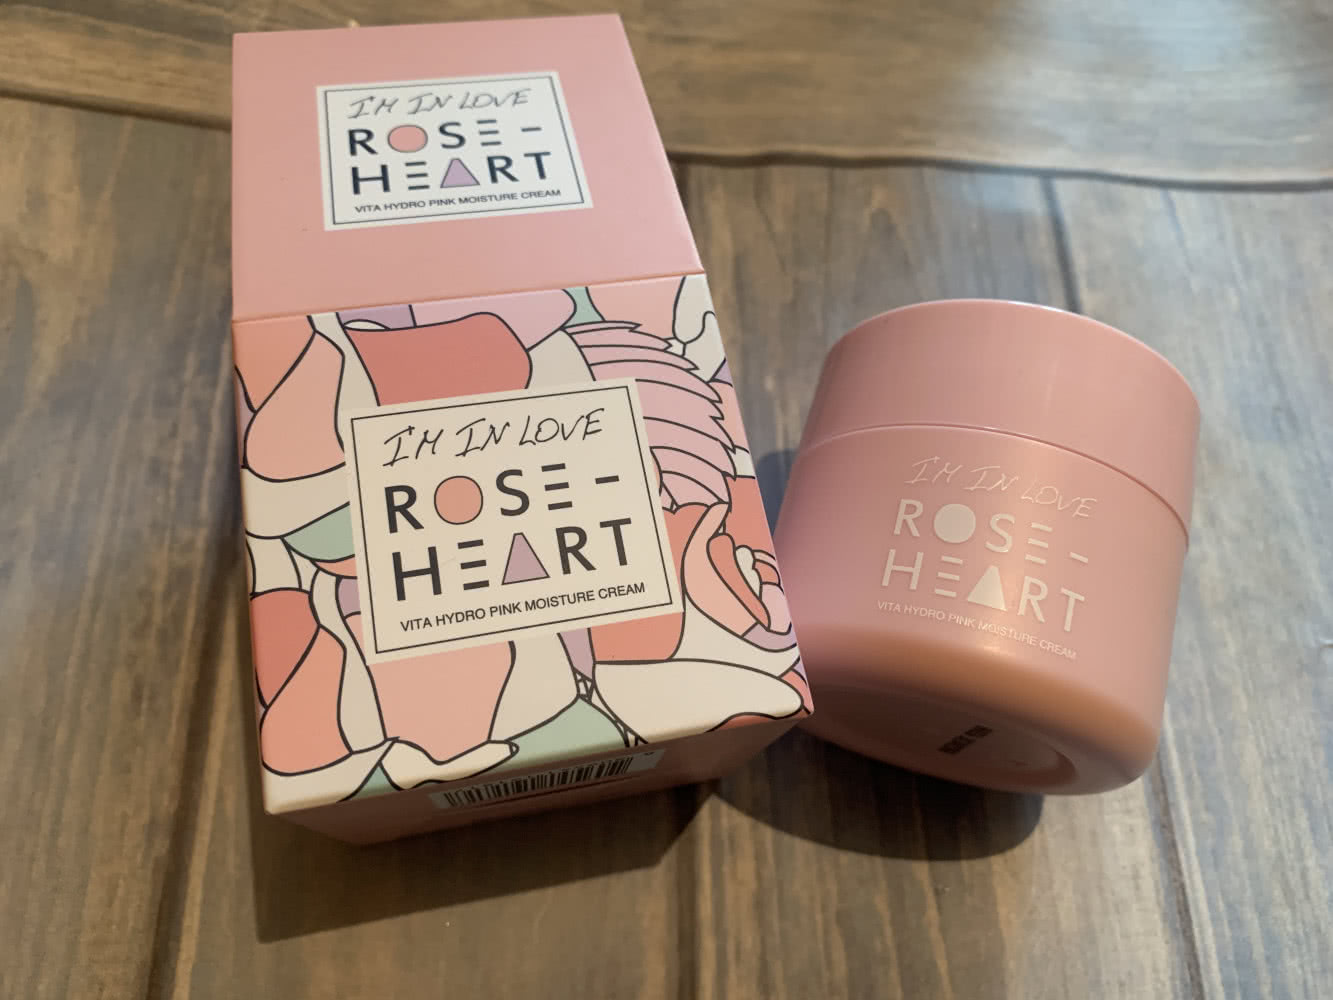 Roseheart, Vita Hydro Pink Moisture Cream, 50ml